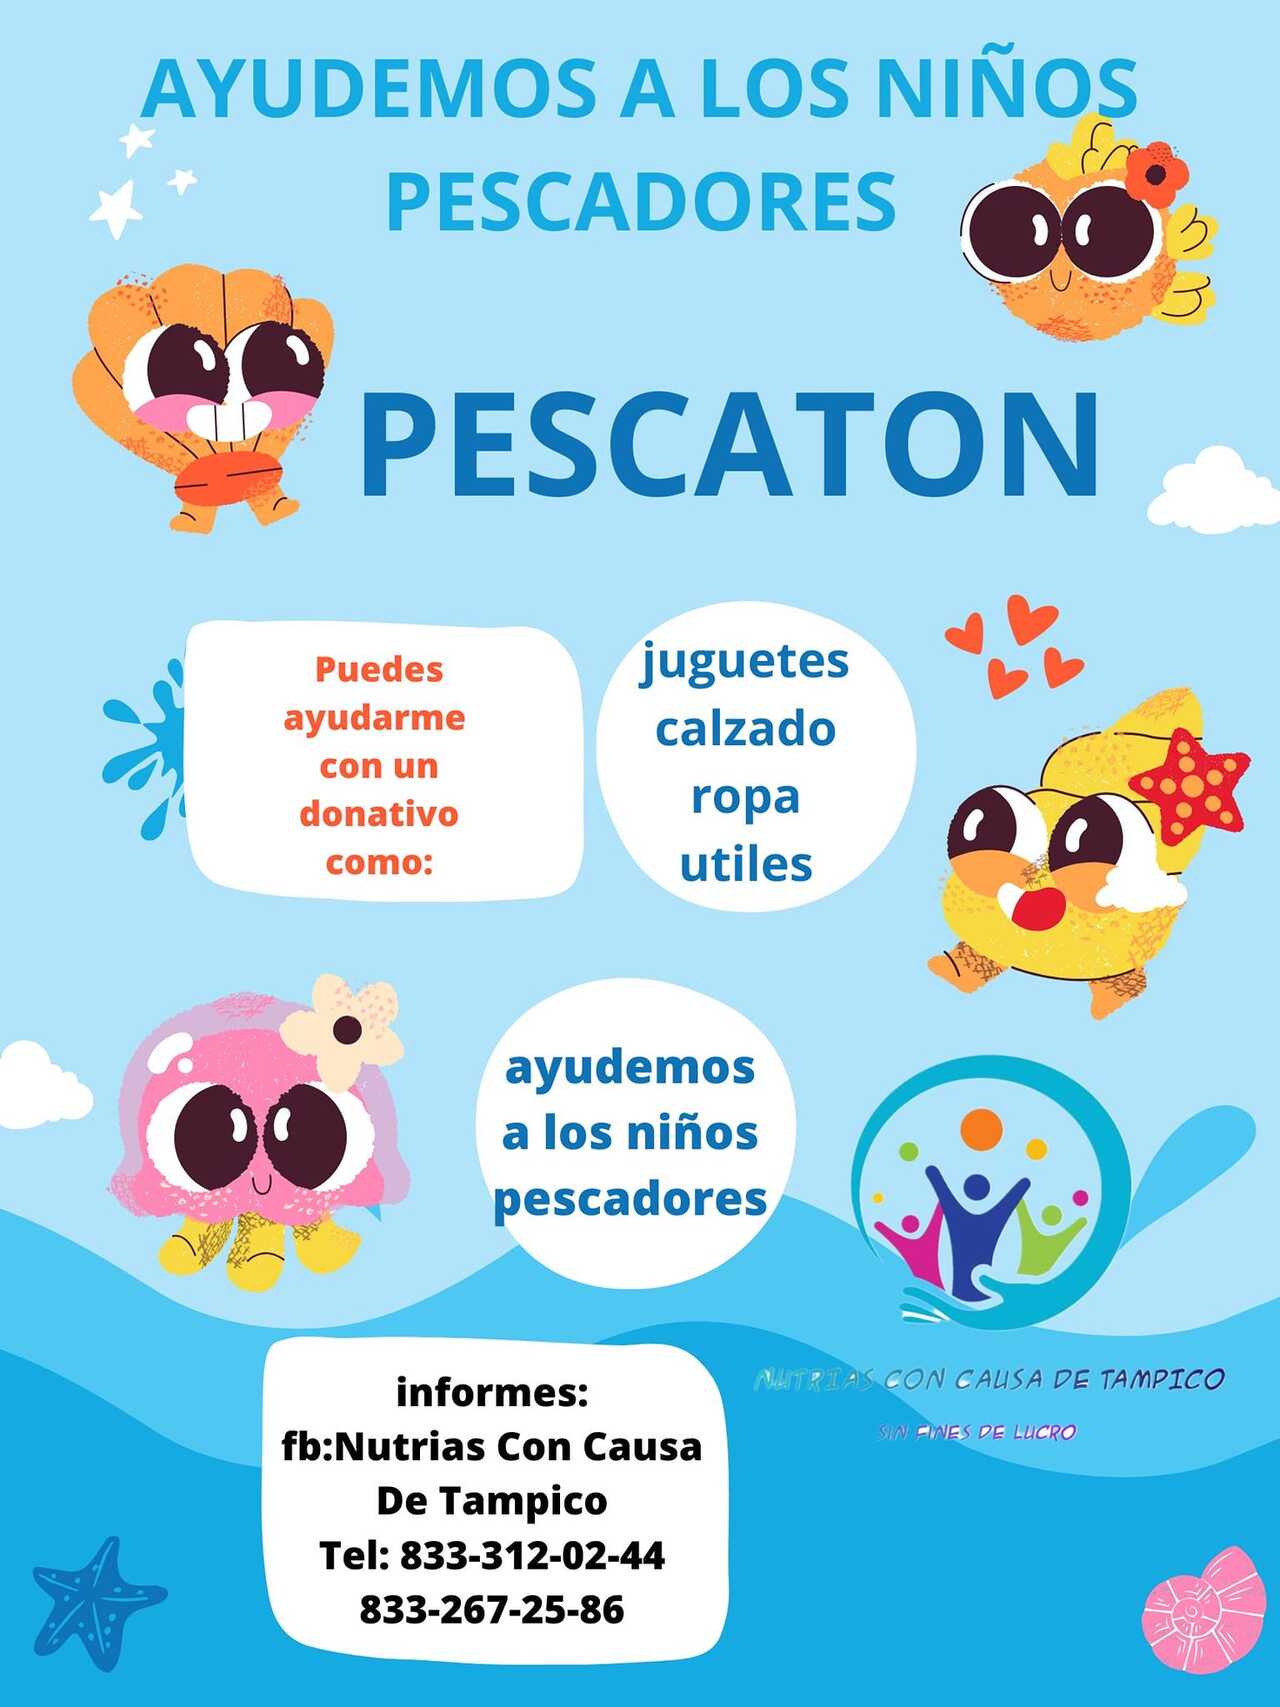 Lanzan en Tampico el Pescatón, campaña para ayudar a hijos de pescadores